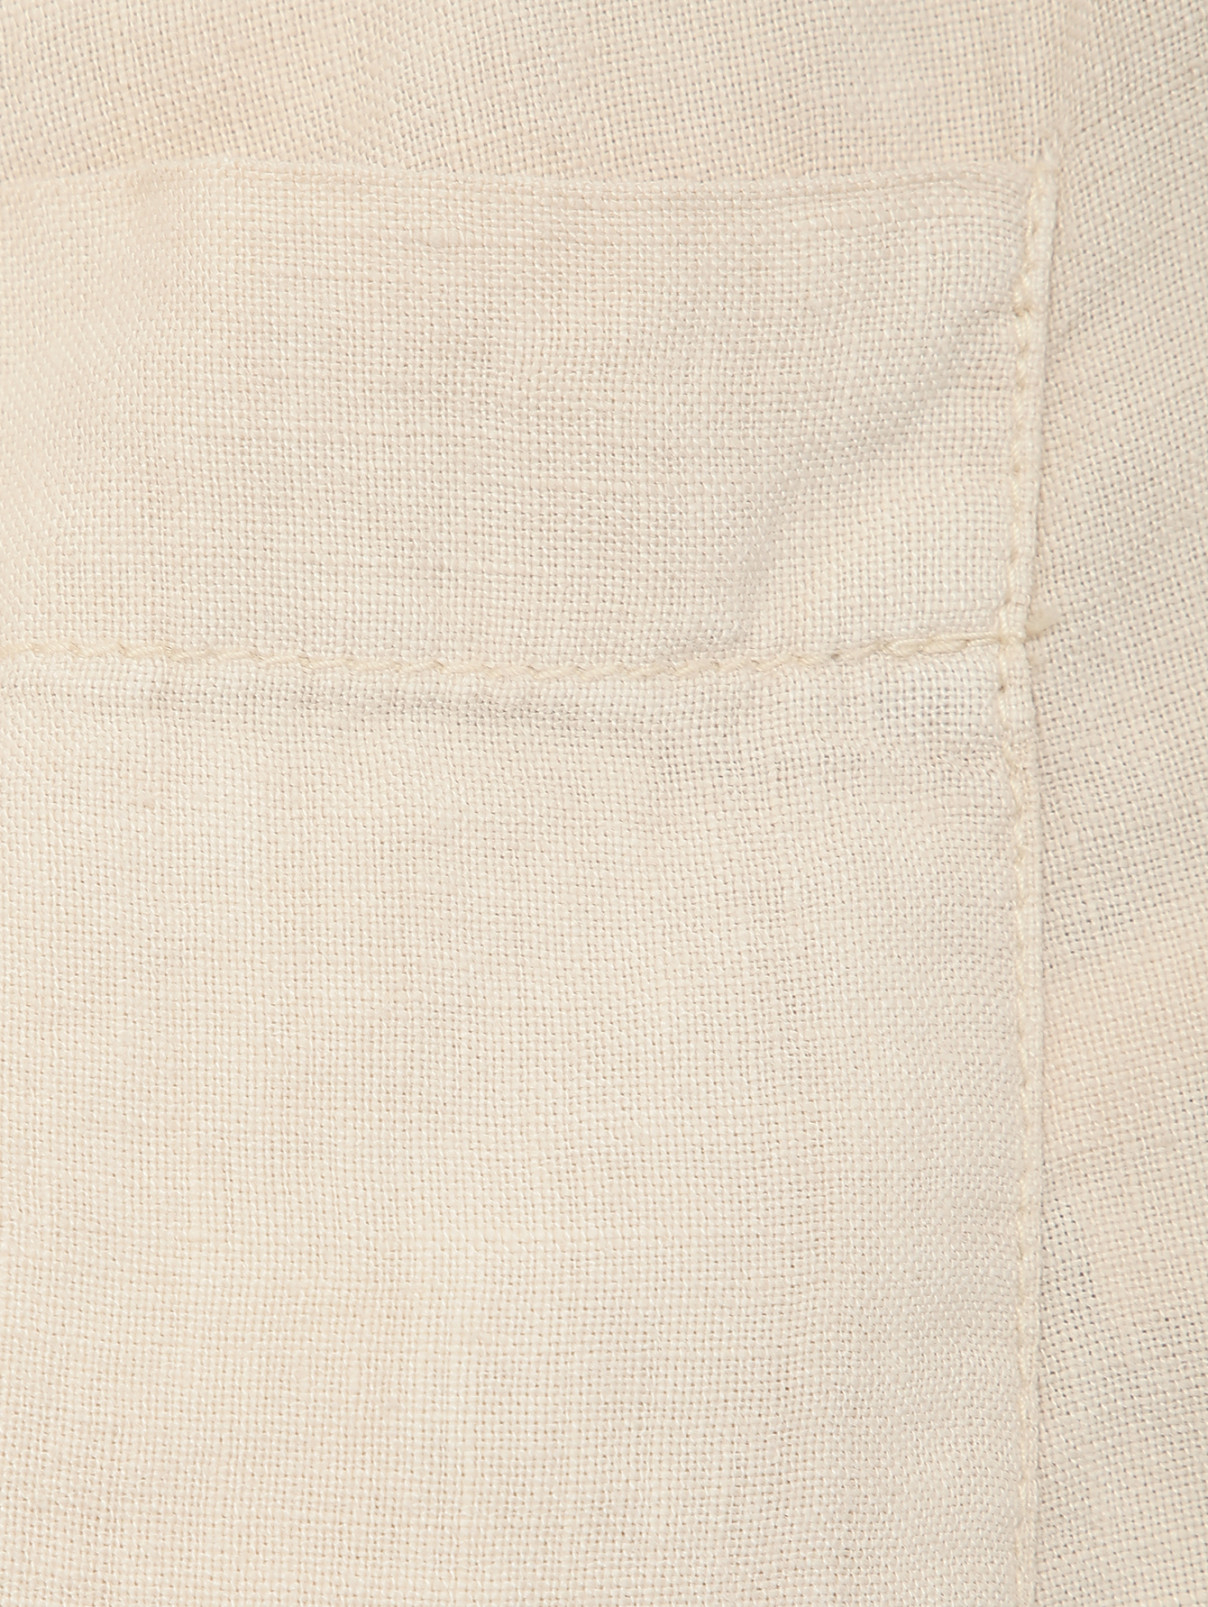 Брюки изо льна с карманами Daniele Alessandrini  –  Деталь1  – Цвет:  Бежевый